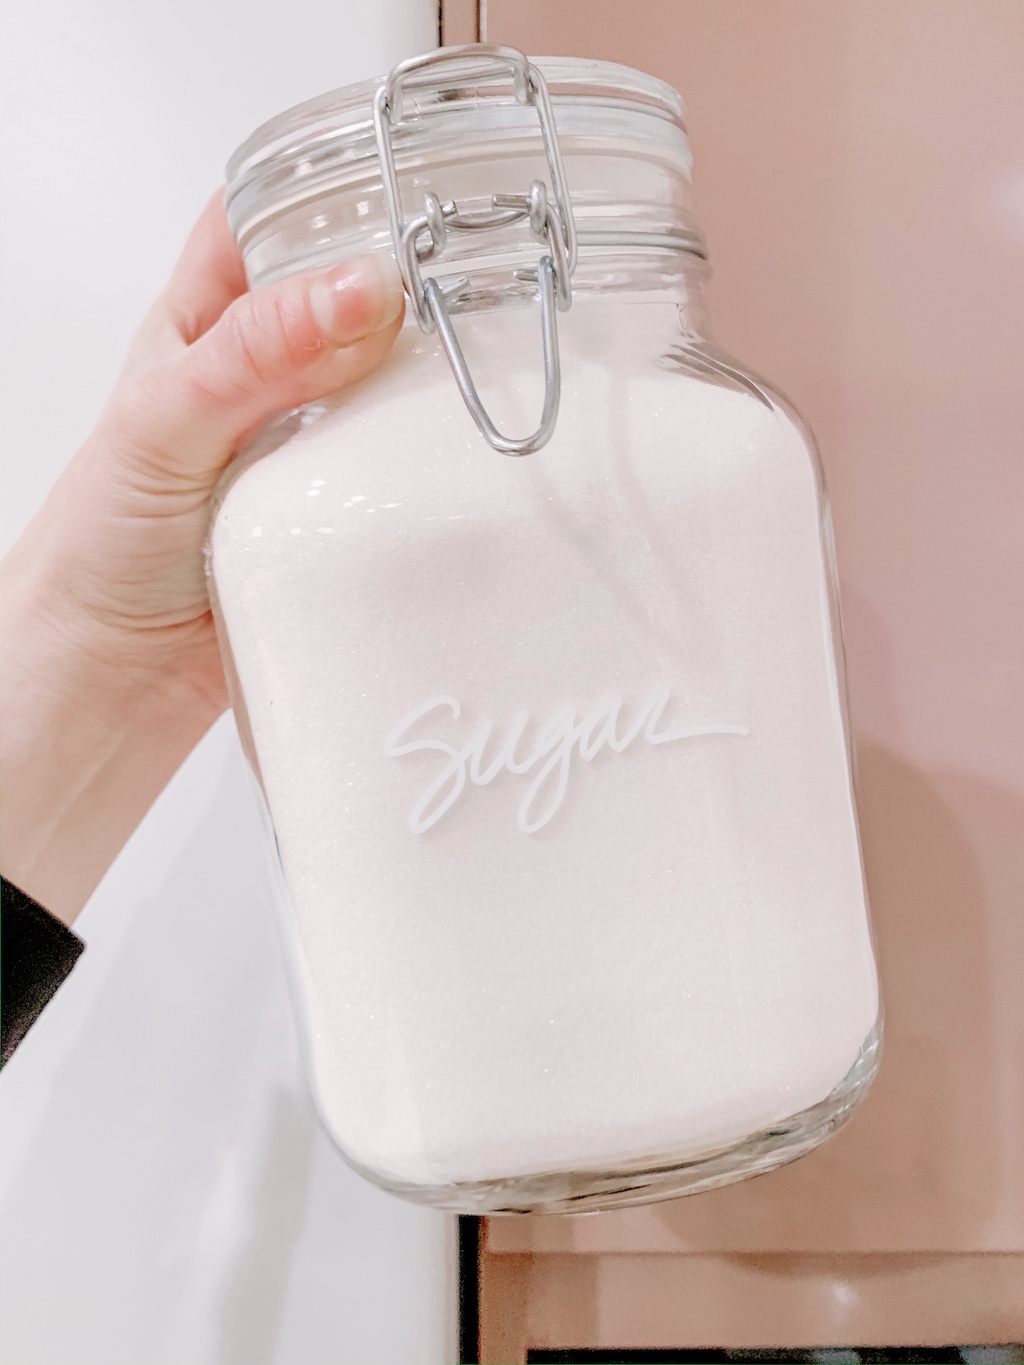 Jar of sugar